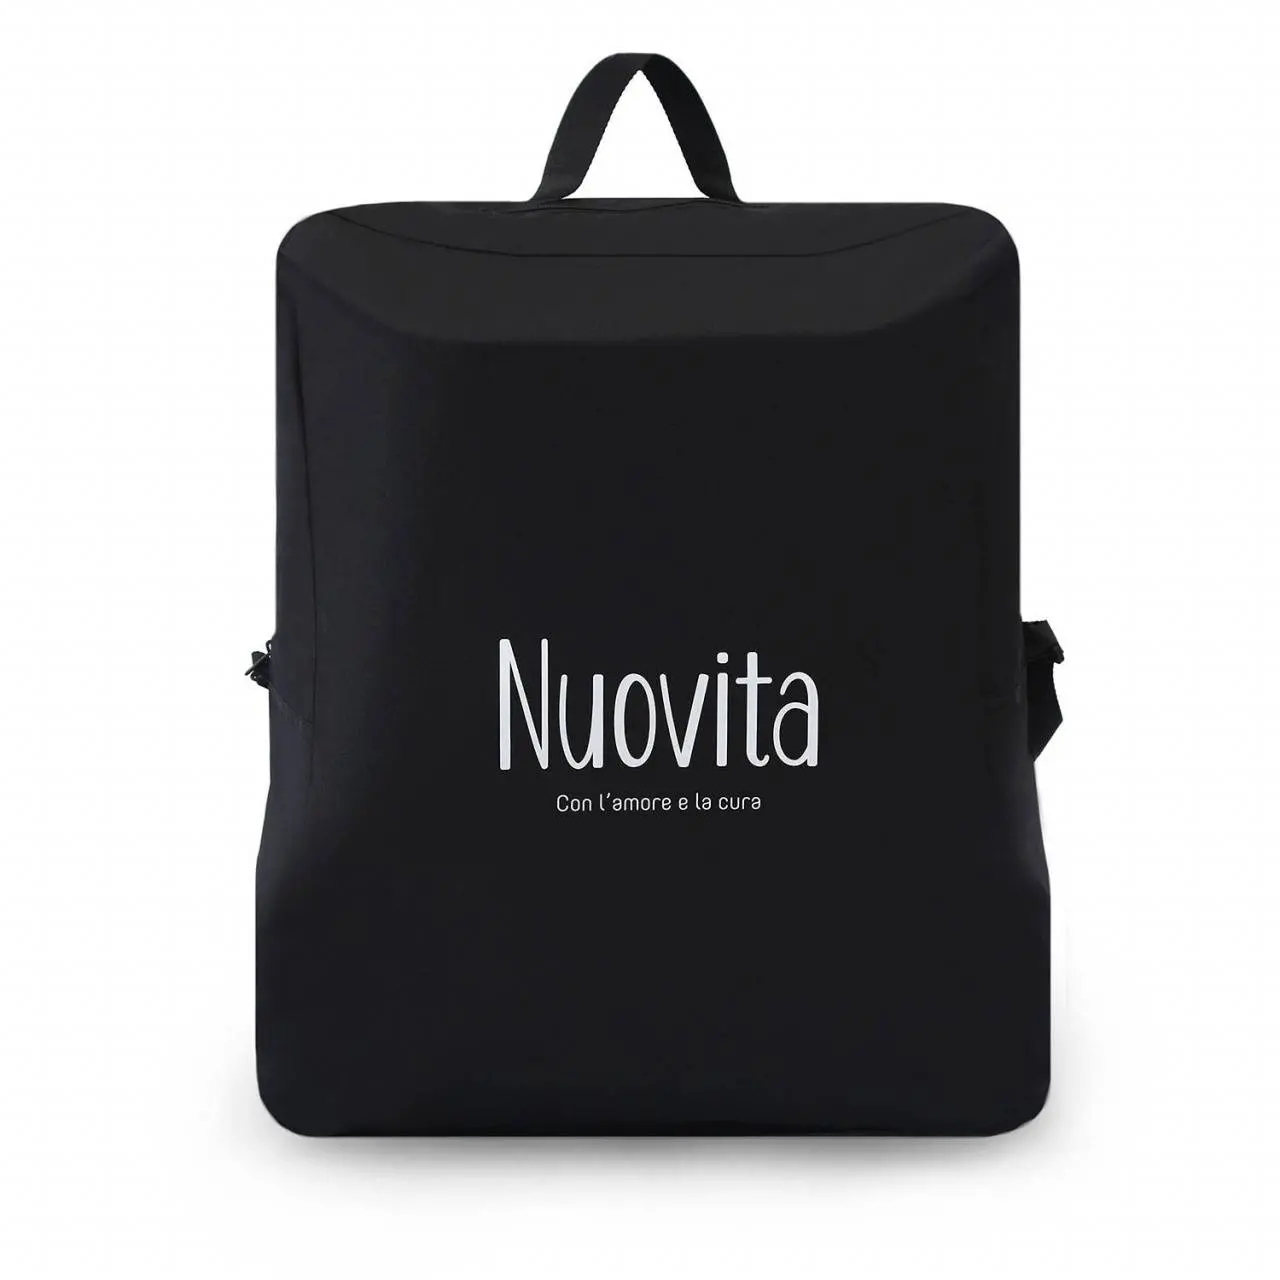 Коляска прогулочная Nuovita Sfera цвет: Platino grigio, Nero / Серая платина, Черный